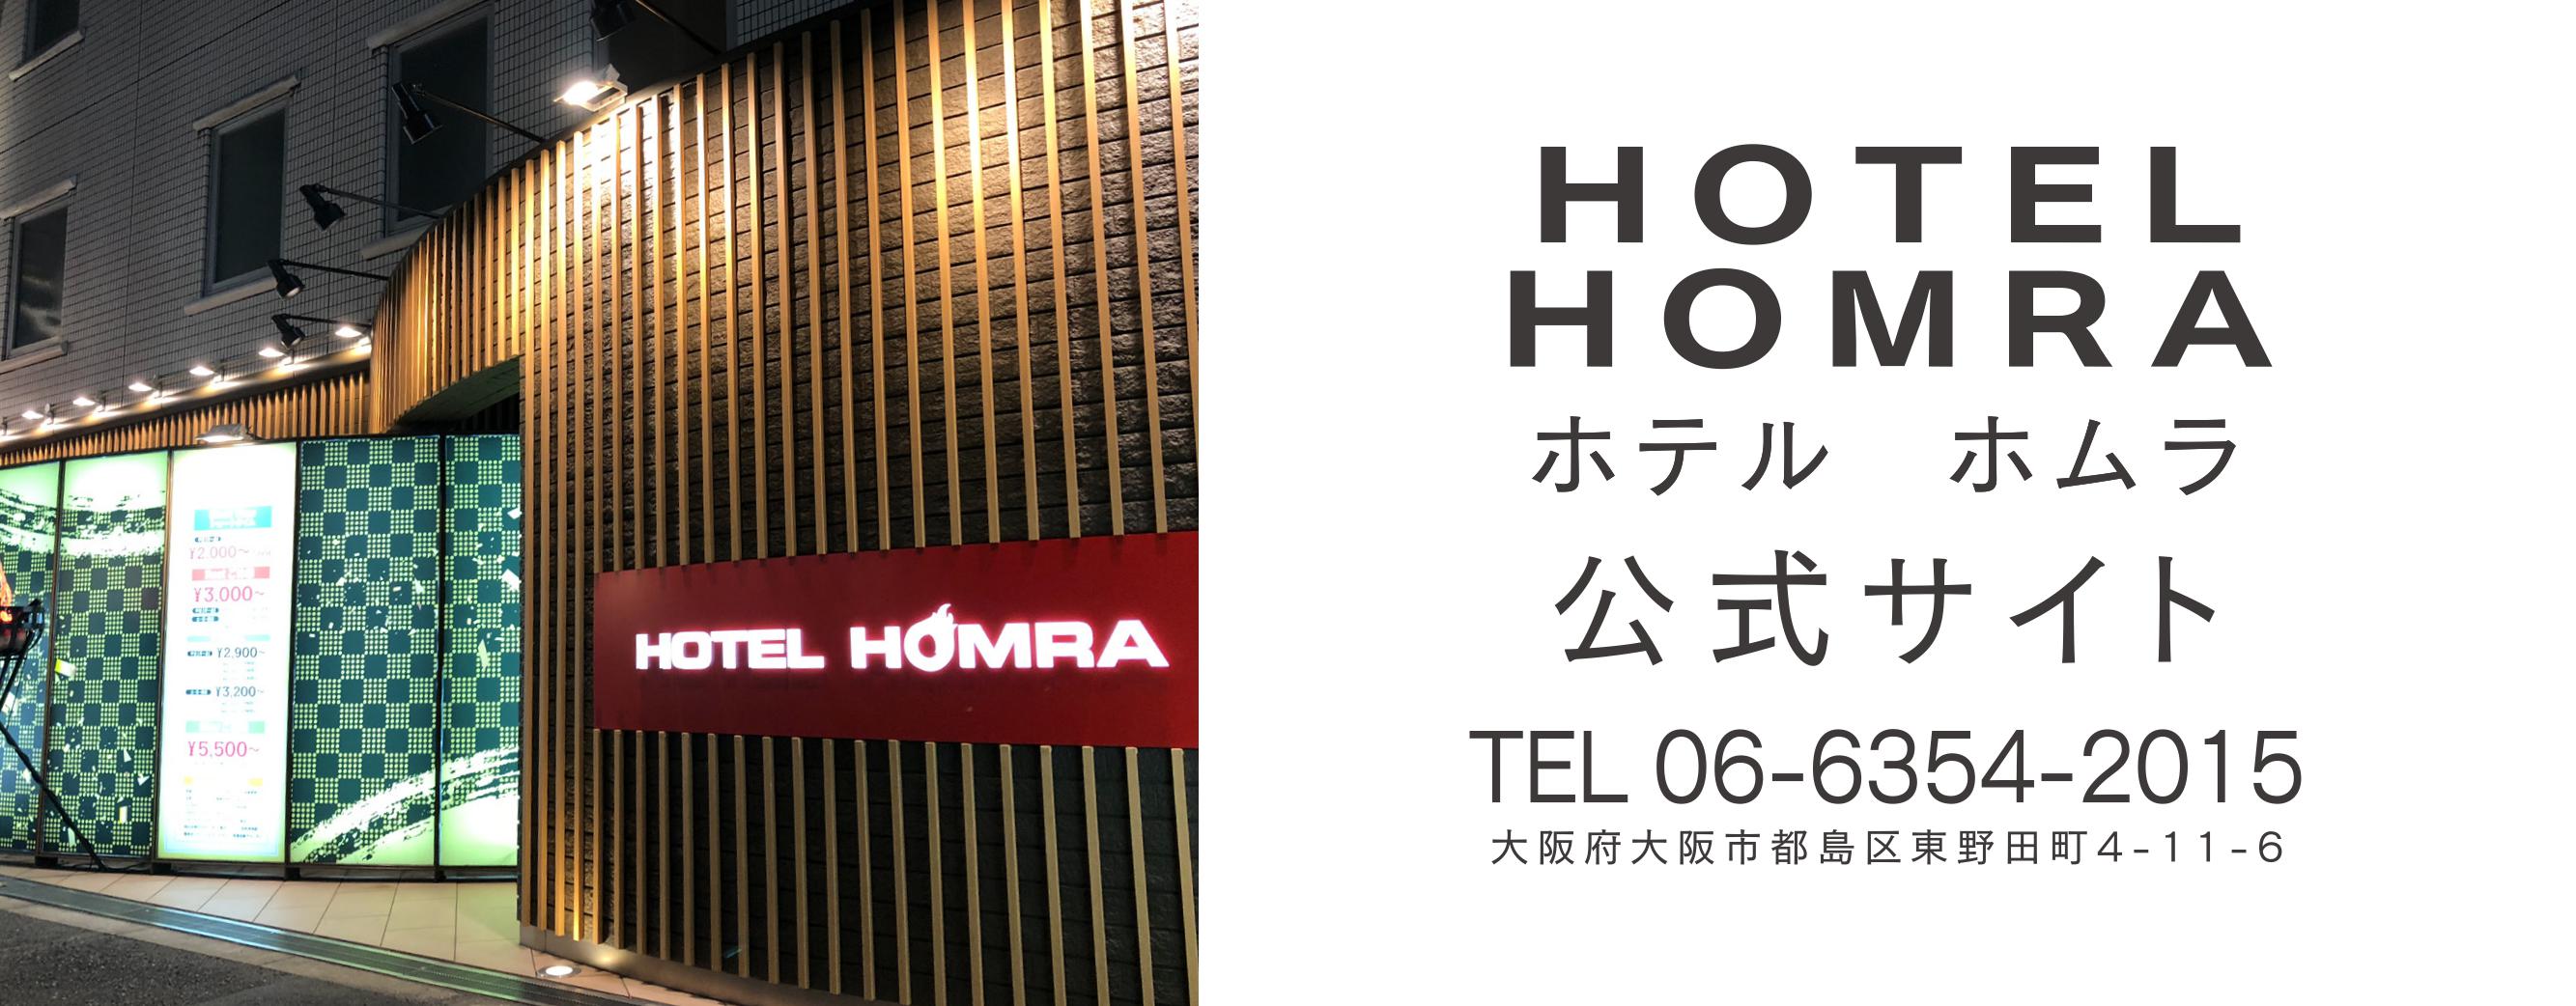 大阪京橋 ホテル ホムラ